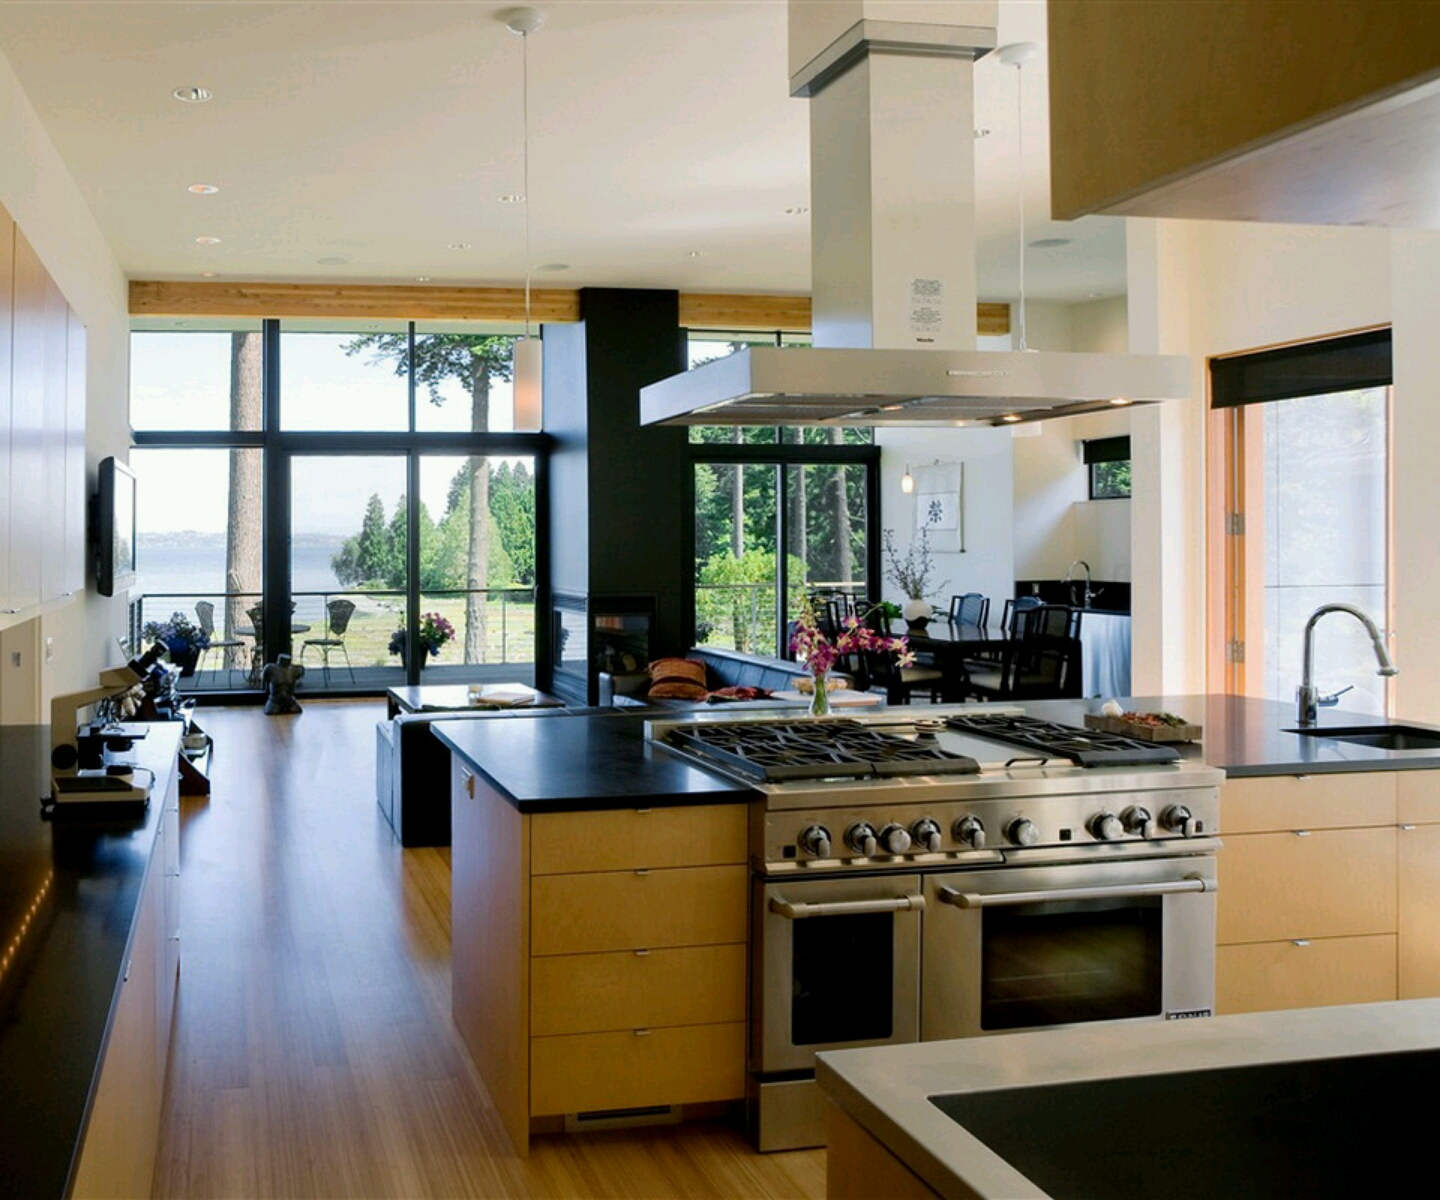 New home designs latest. Modern kitchen designs ideas.